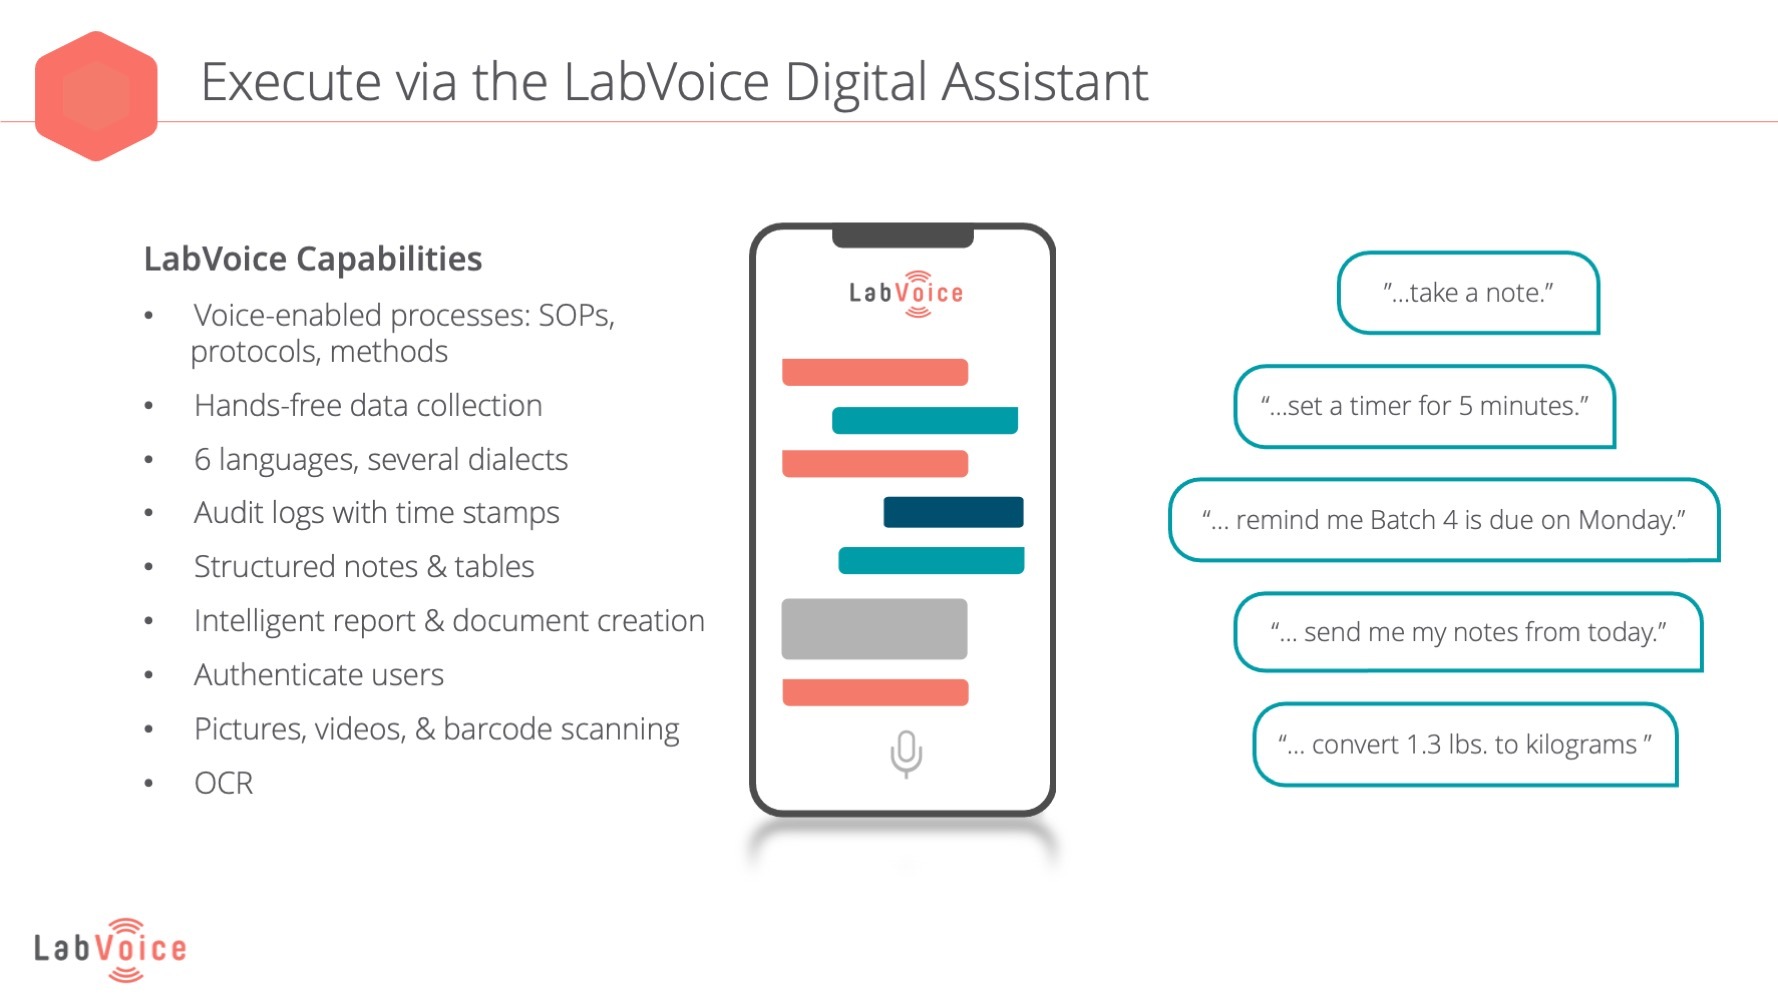 LabVoice Digital Assistant